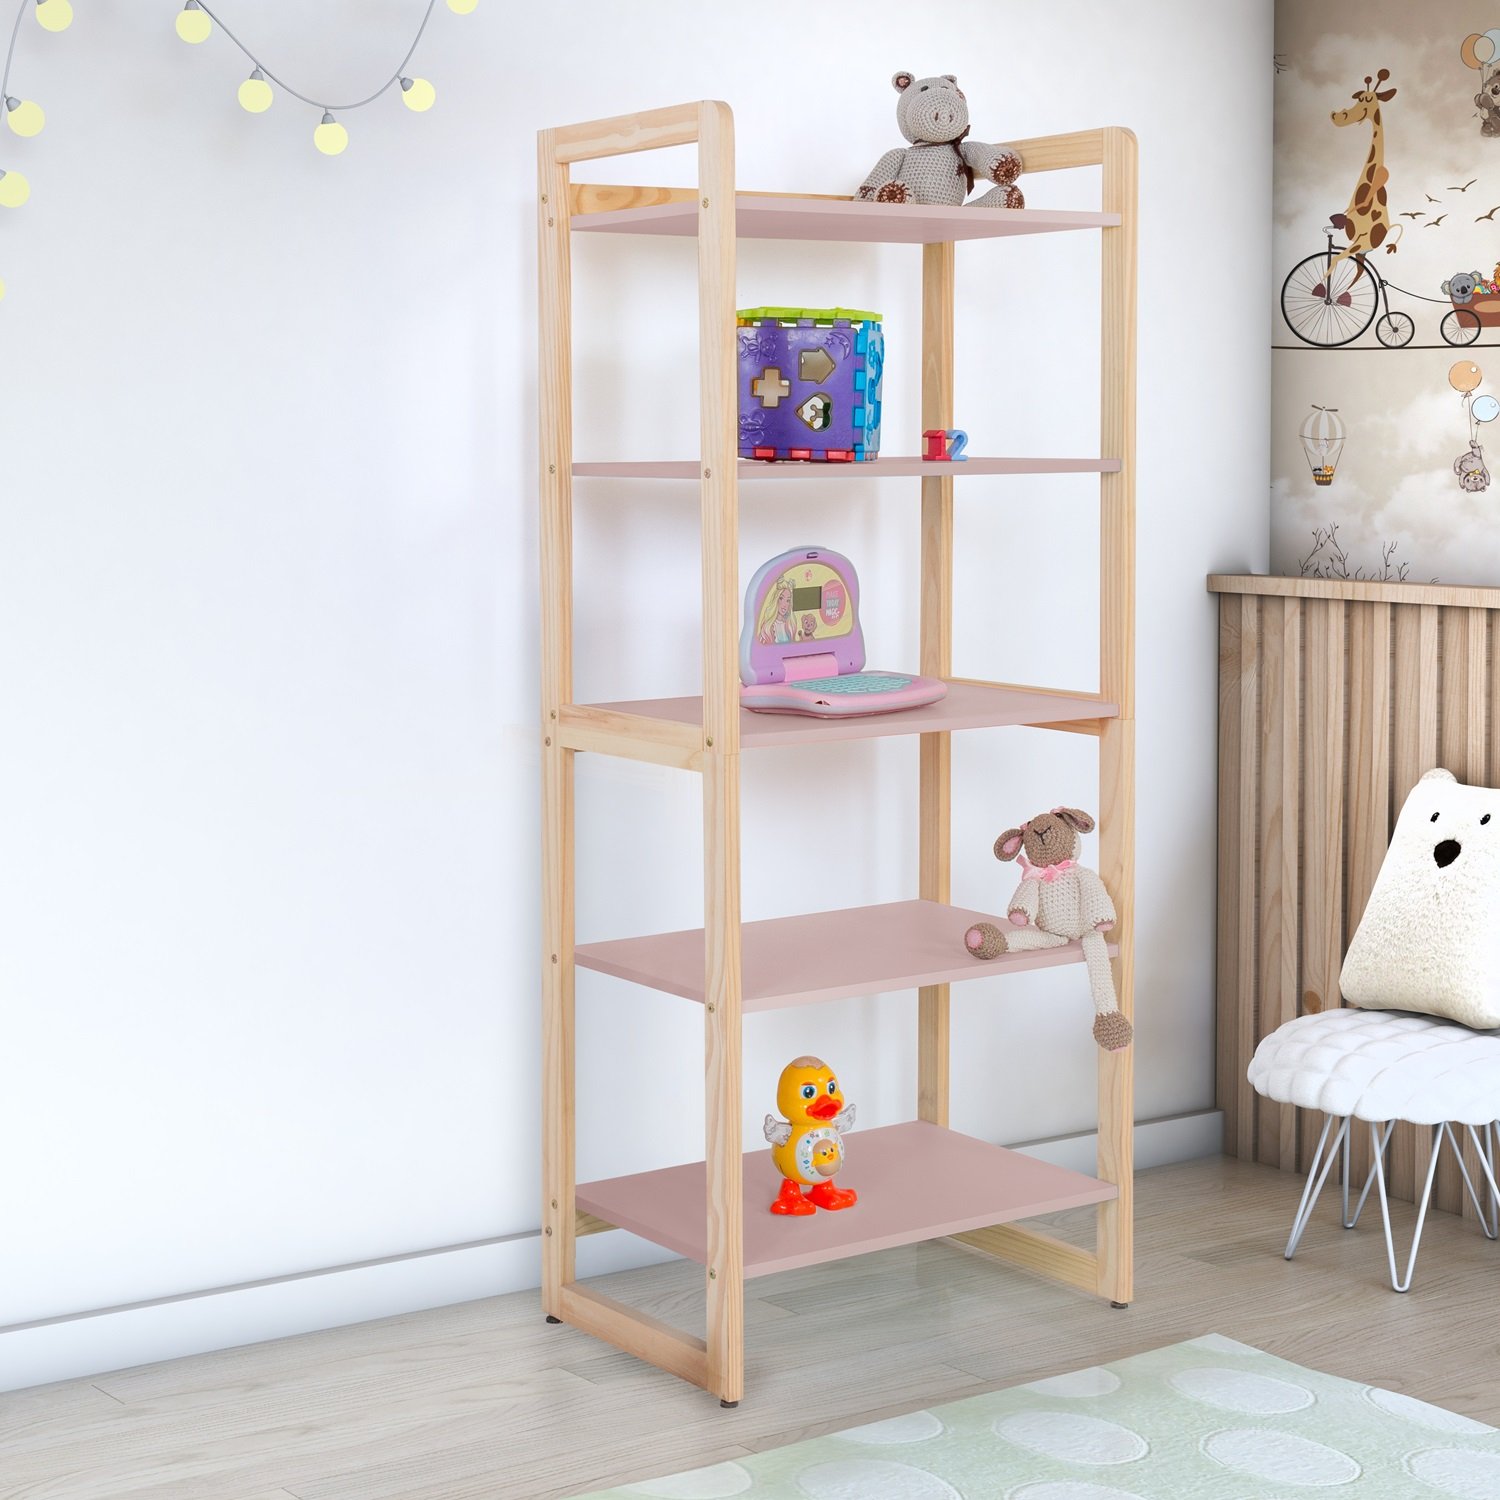 Estante Multiuso Prateleiras Organizador de Livros e Brinquedos Infantil Colore 150cm:rose - 2